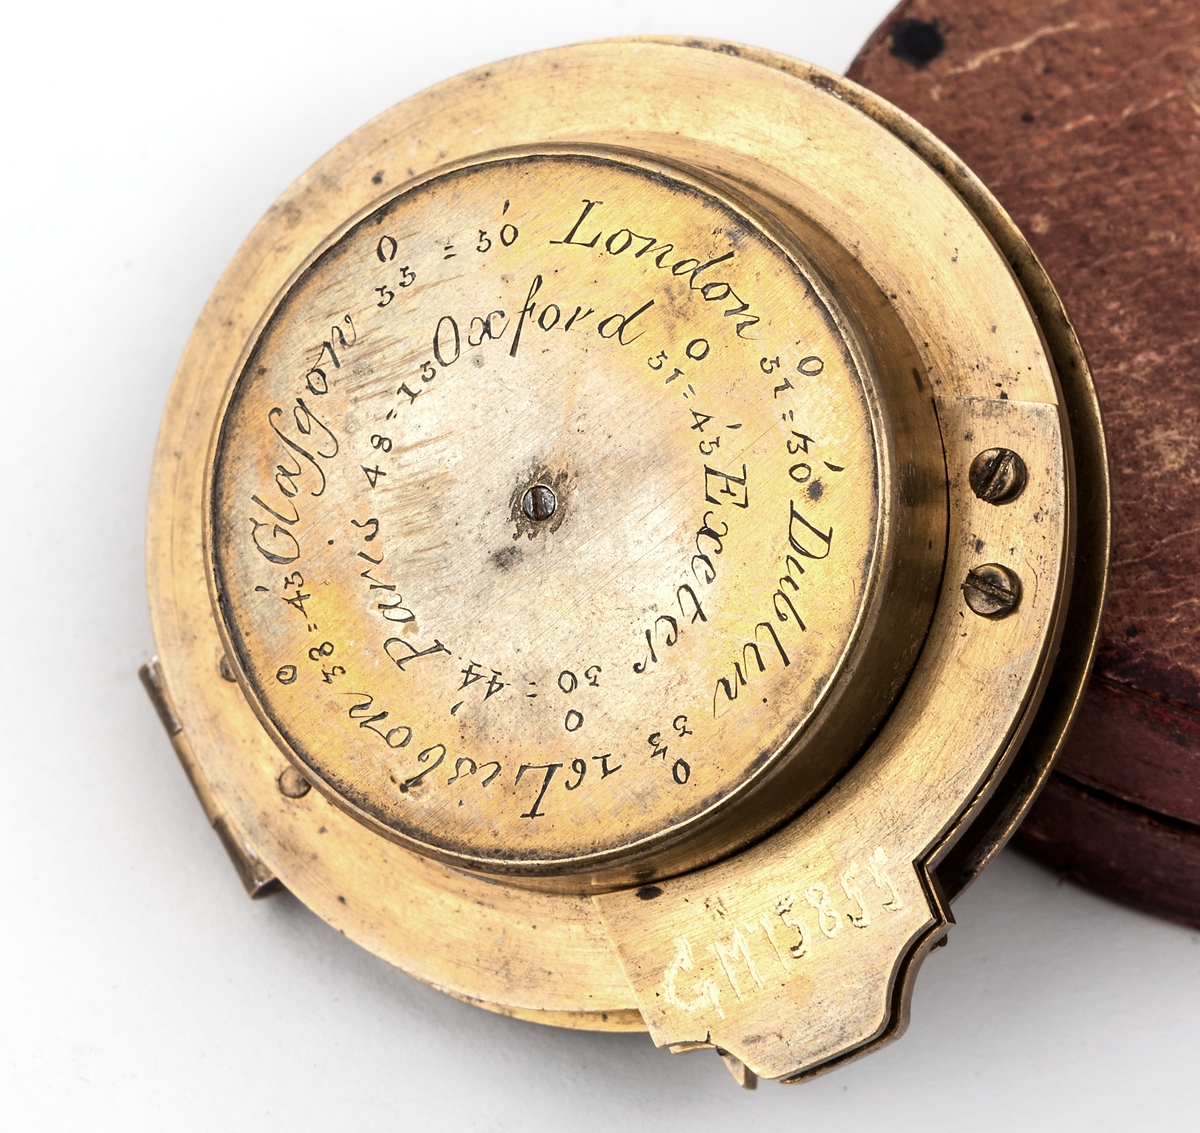 Kompass, av mässing, från Dollond London.
Glaset över kompassnålen är spräckt.
Förvaras i röd skinnask.